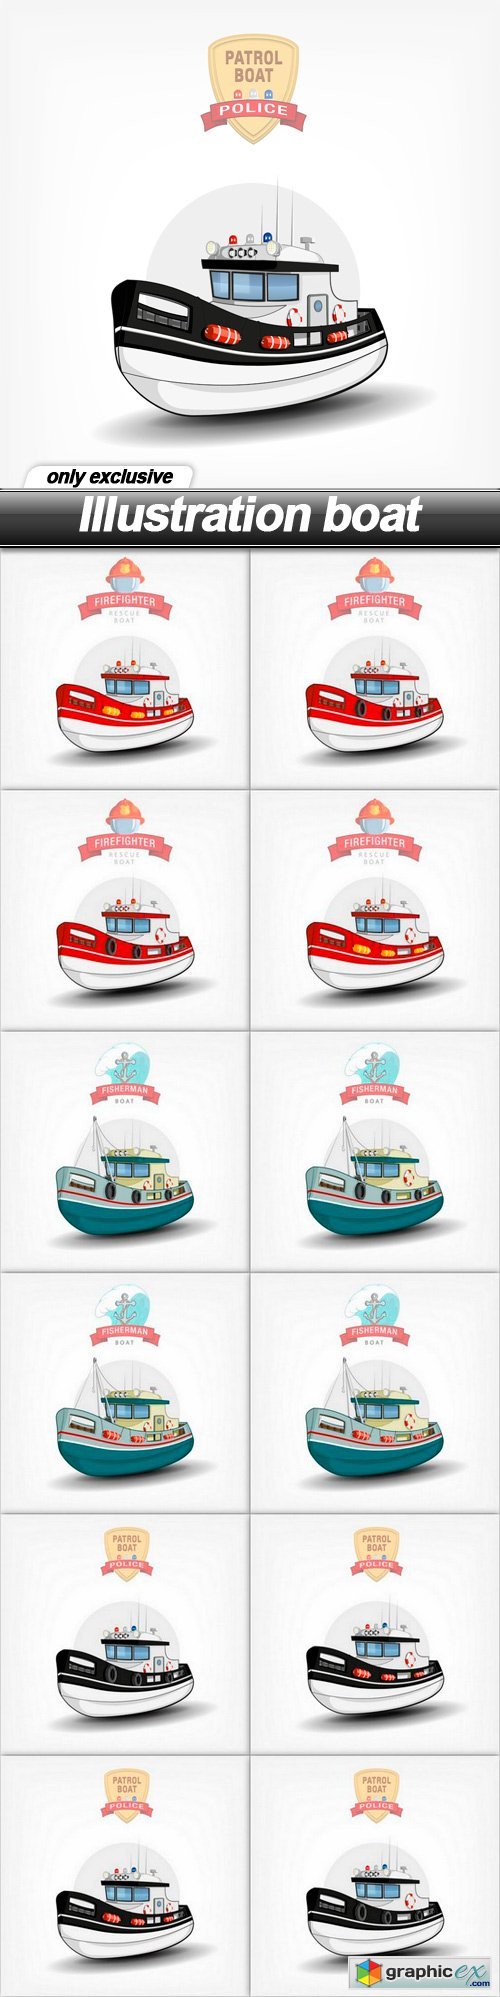 Illustration boat - 12 EPS